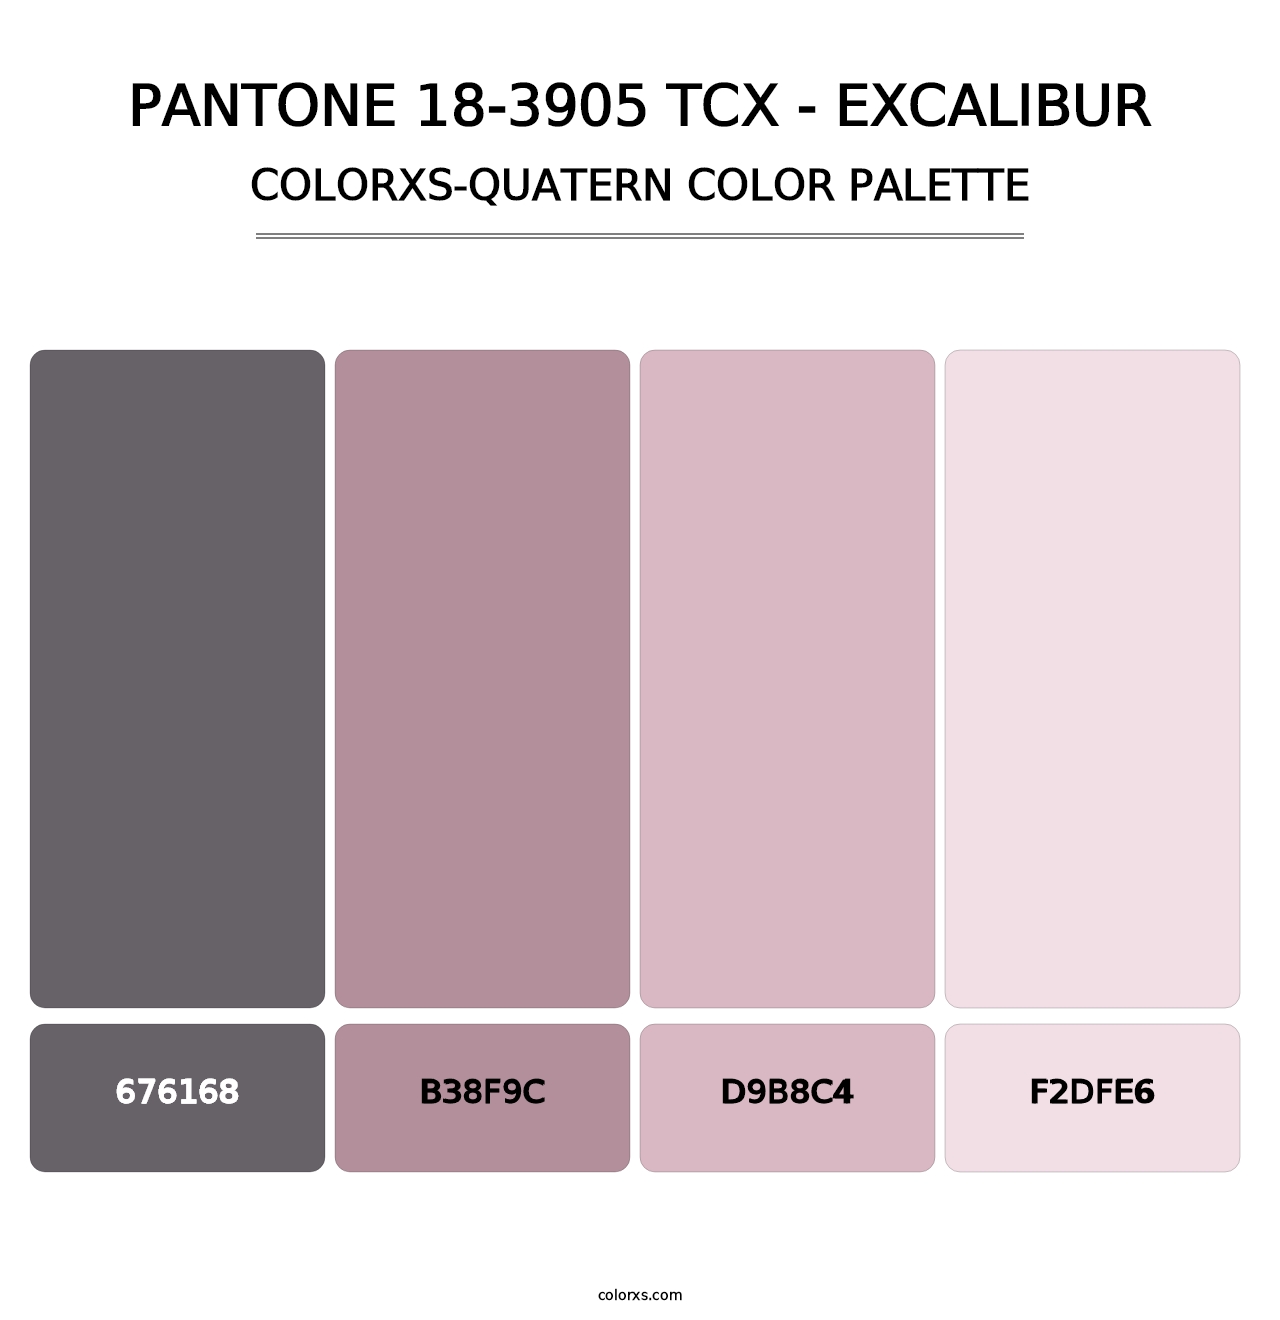 PANTONE 18-3905 TCX - Excalibur - Colorxs Quatern Palette